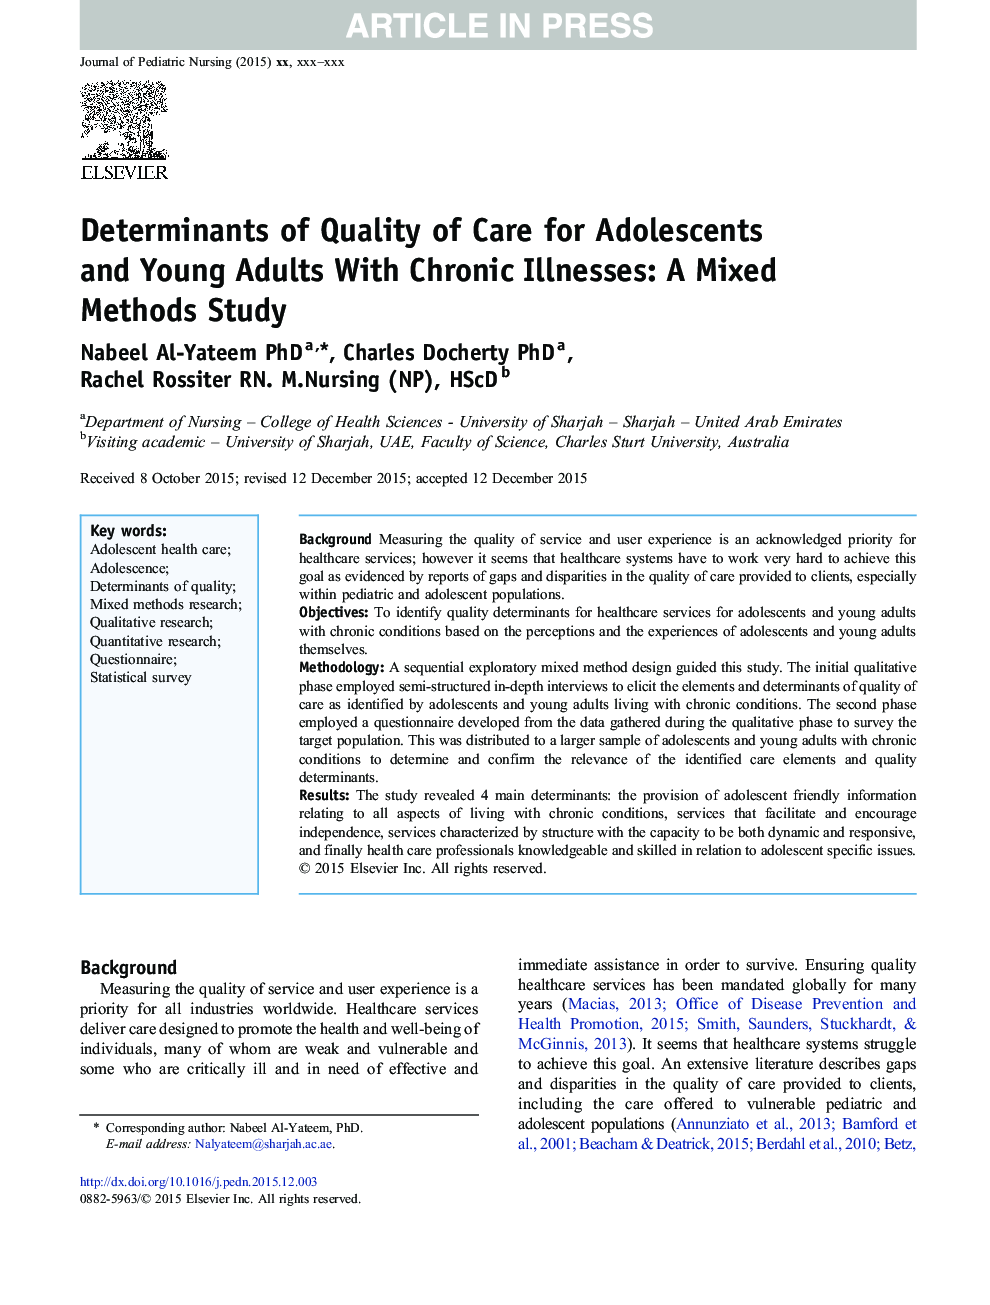 عوامل تعیین کننده کیفیت مراقبت از نوجوانان و بزرگسالان جوان مبتلا به بیماری های مزمن: مطالعه روش های ترکیبی 